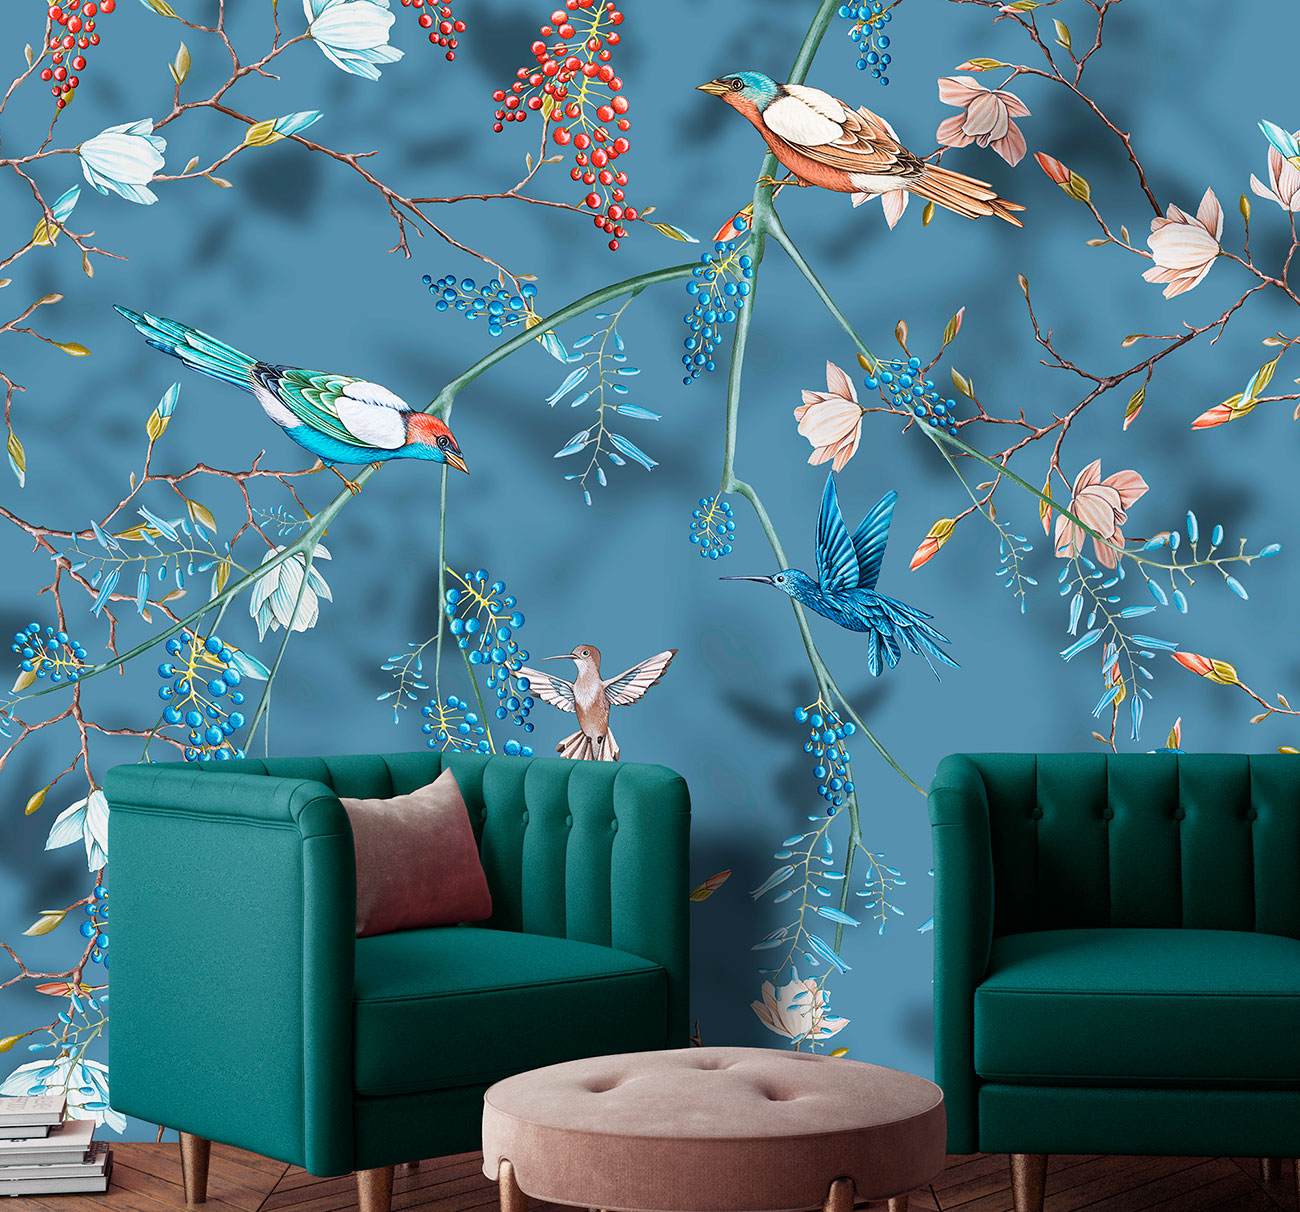 Carta da parati floreale effetto 3d con fiori ed uccelli tropicali dipinti a mano su fondo blu